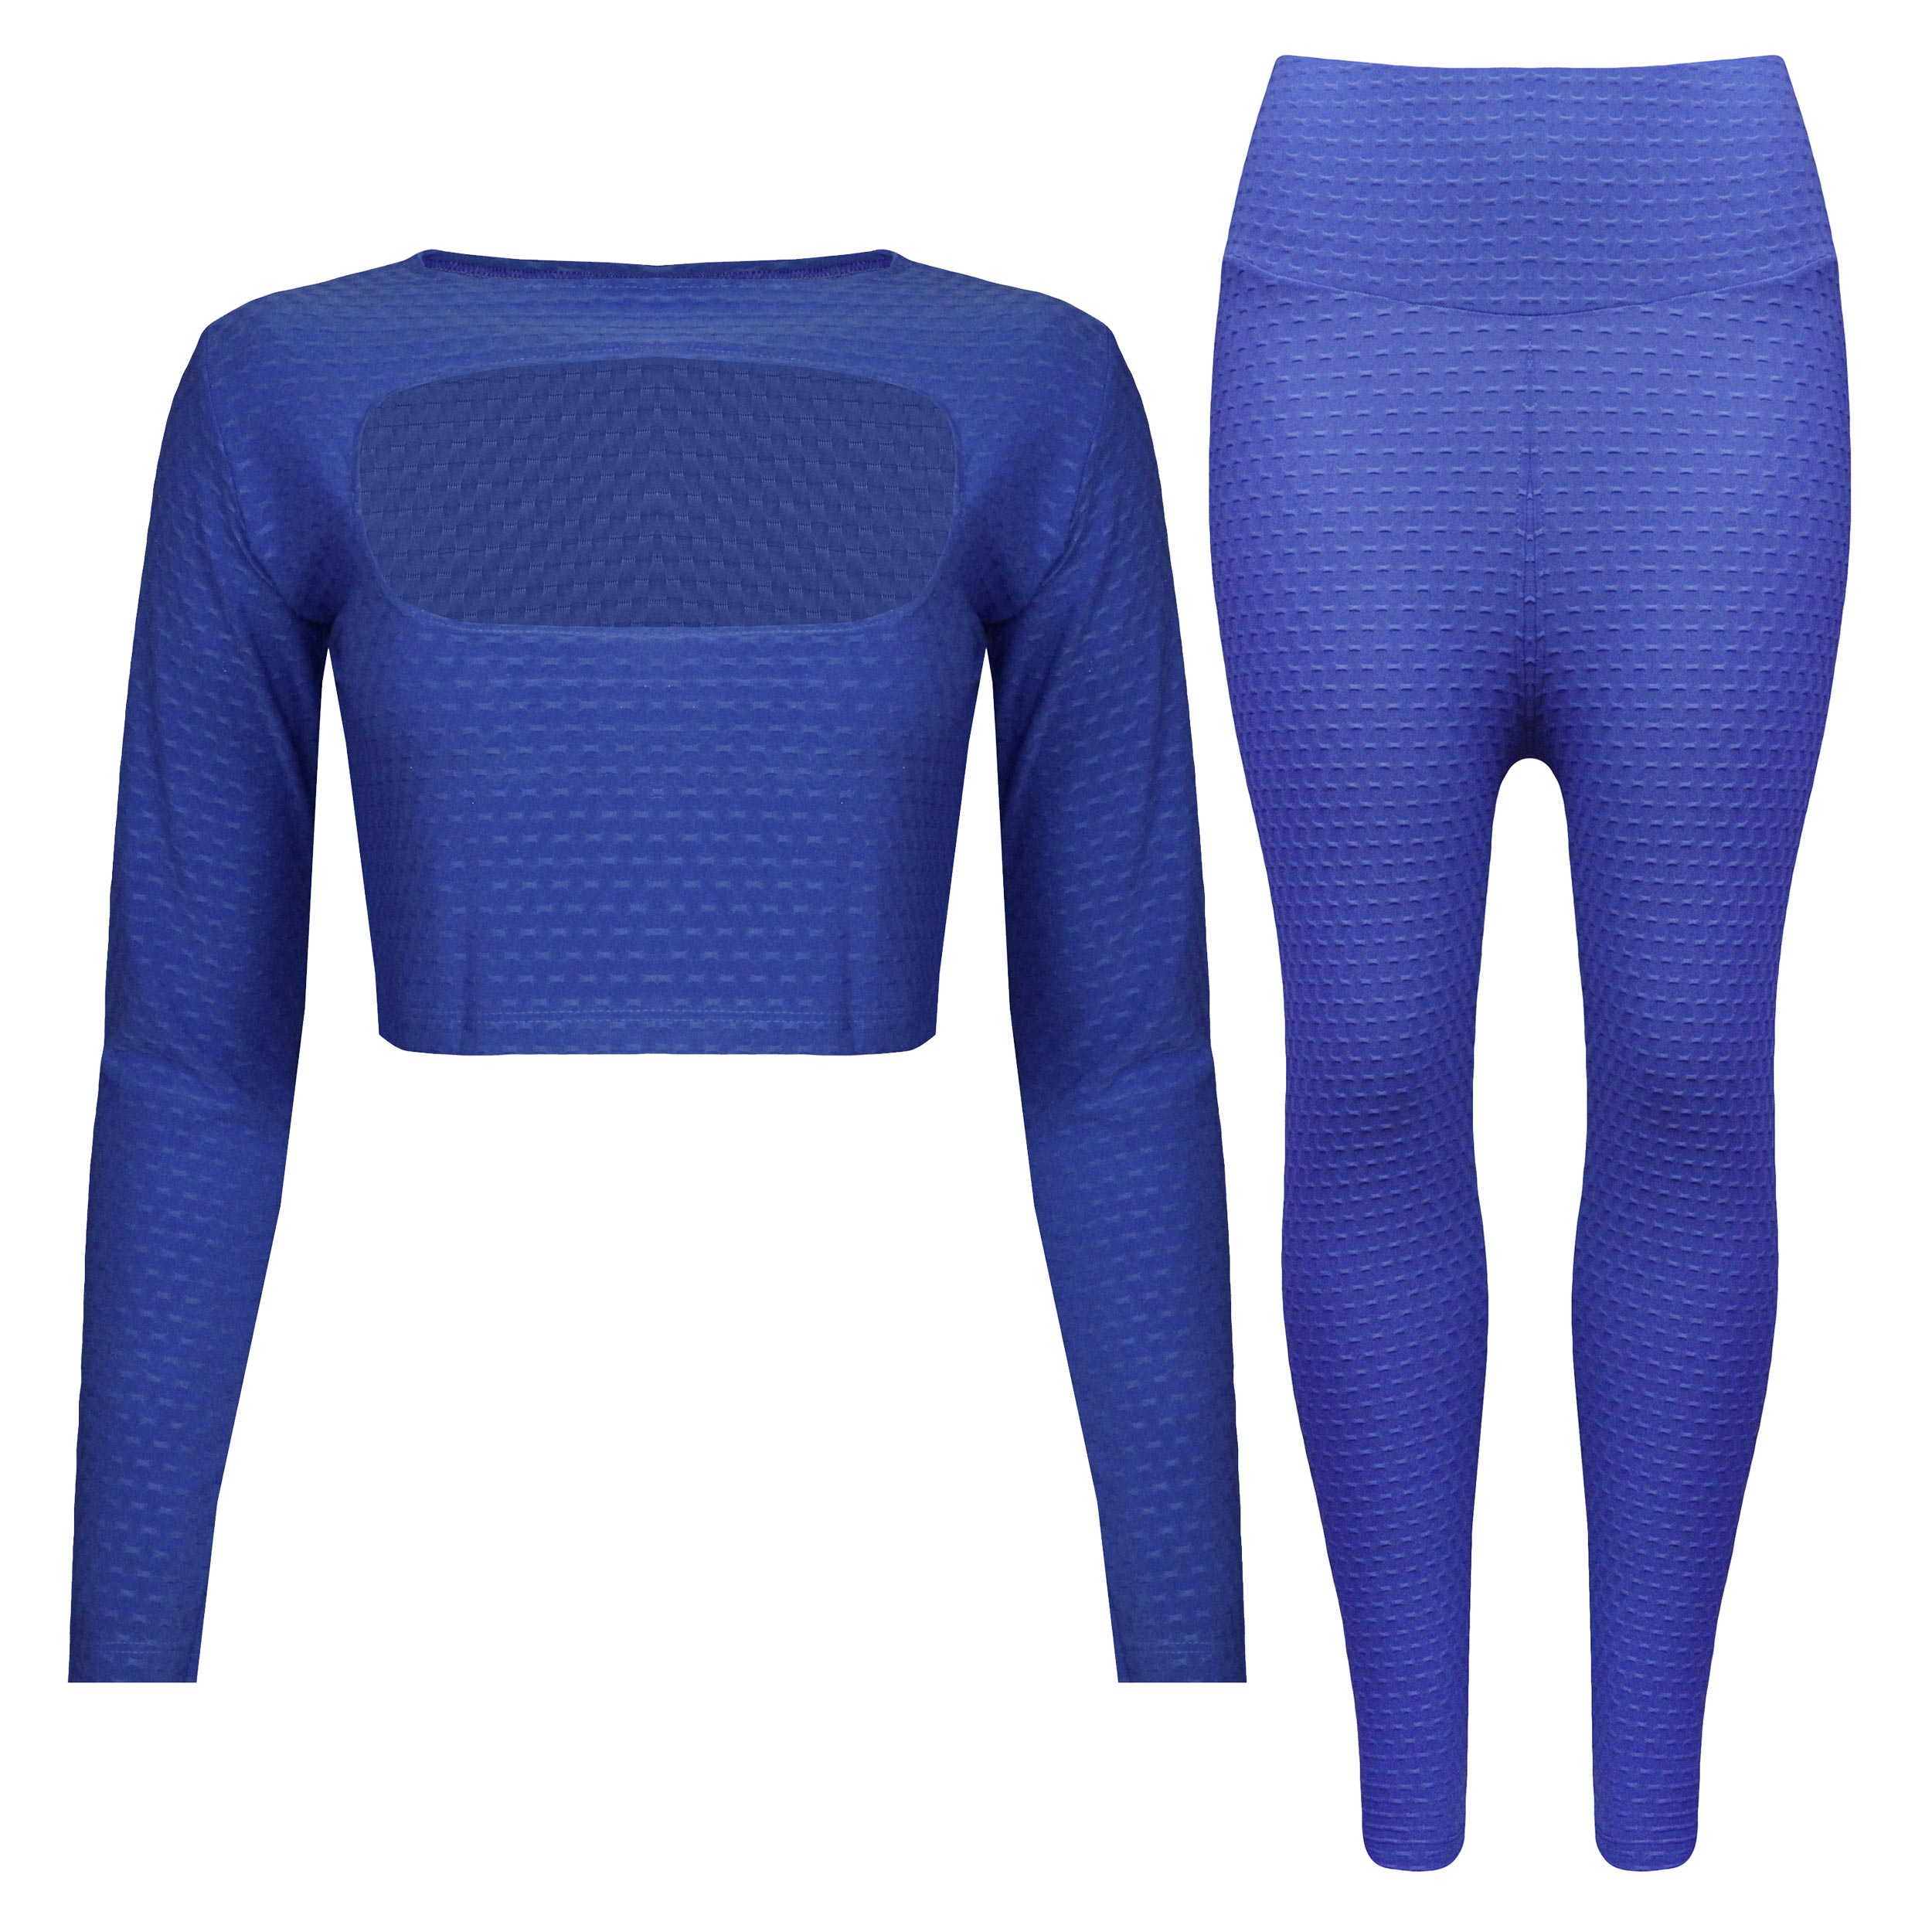 ست تی شرت آستین بلند و لگینگ ورزشی زنانه ماییلدا مدل 4321-6910 رنگ آبی